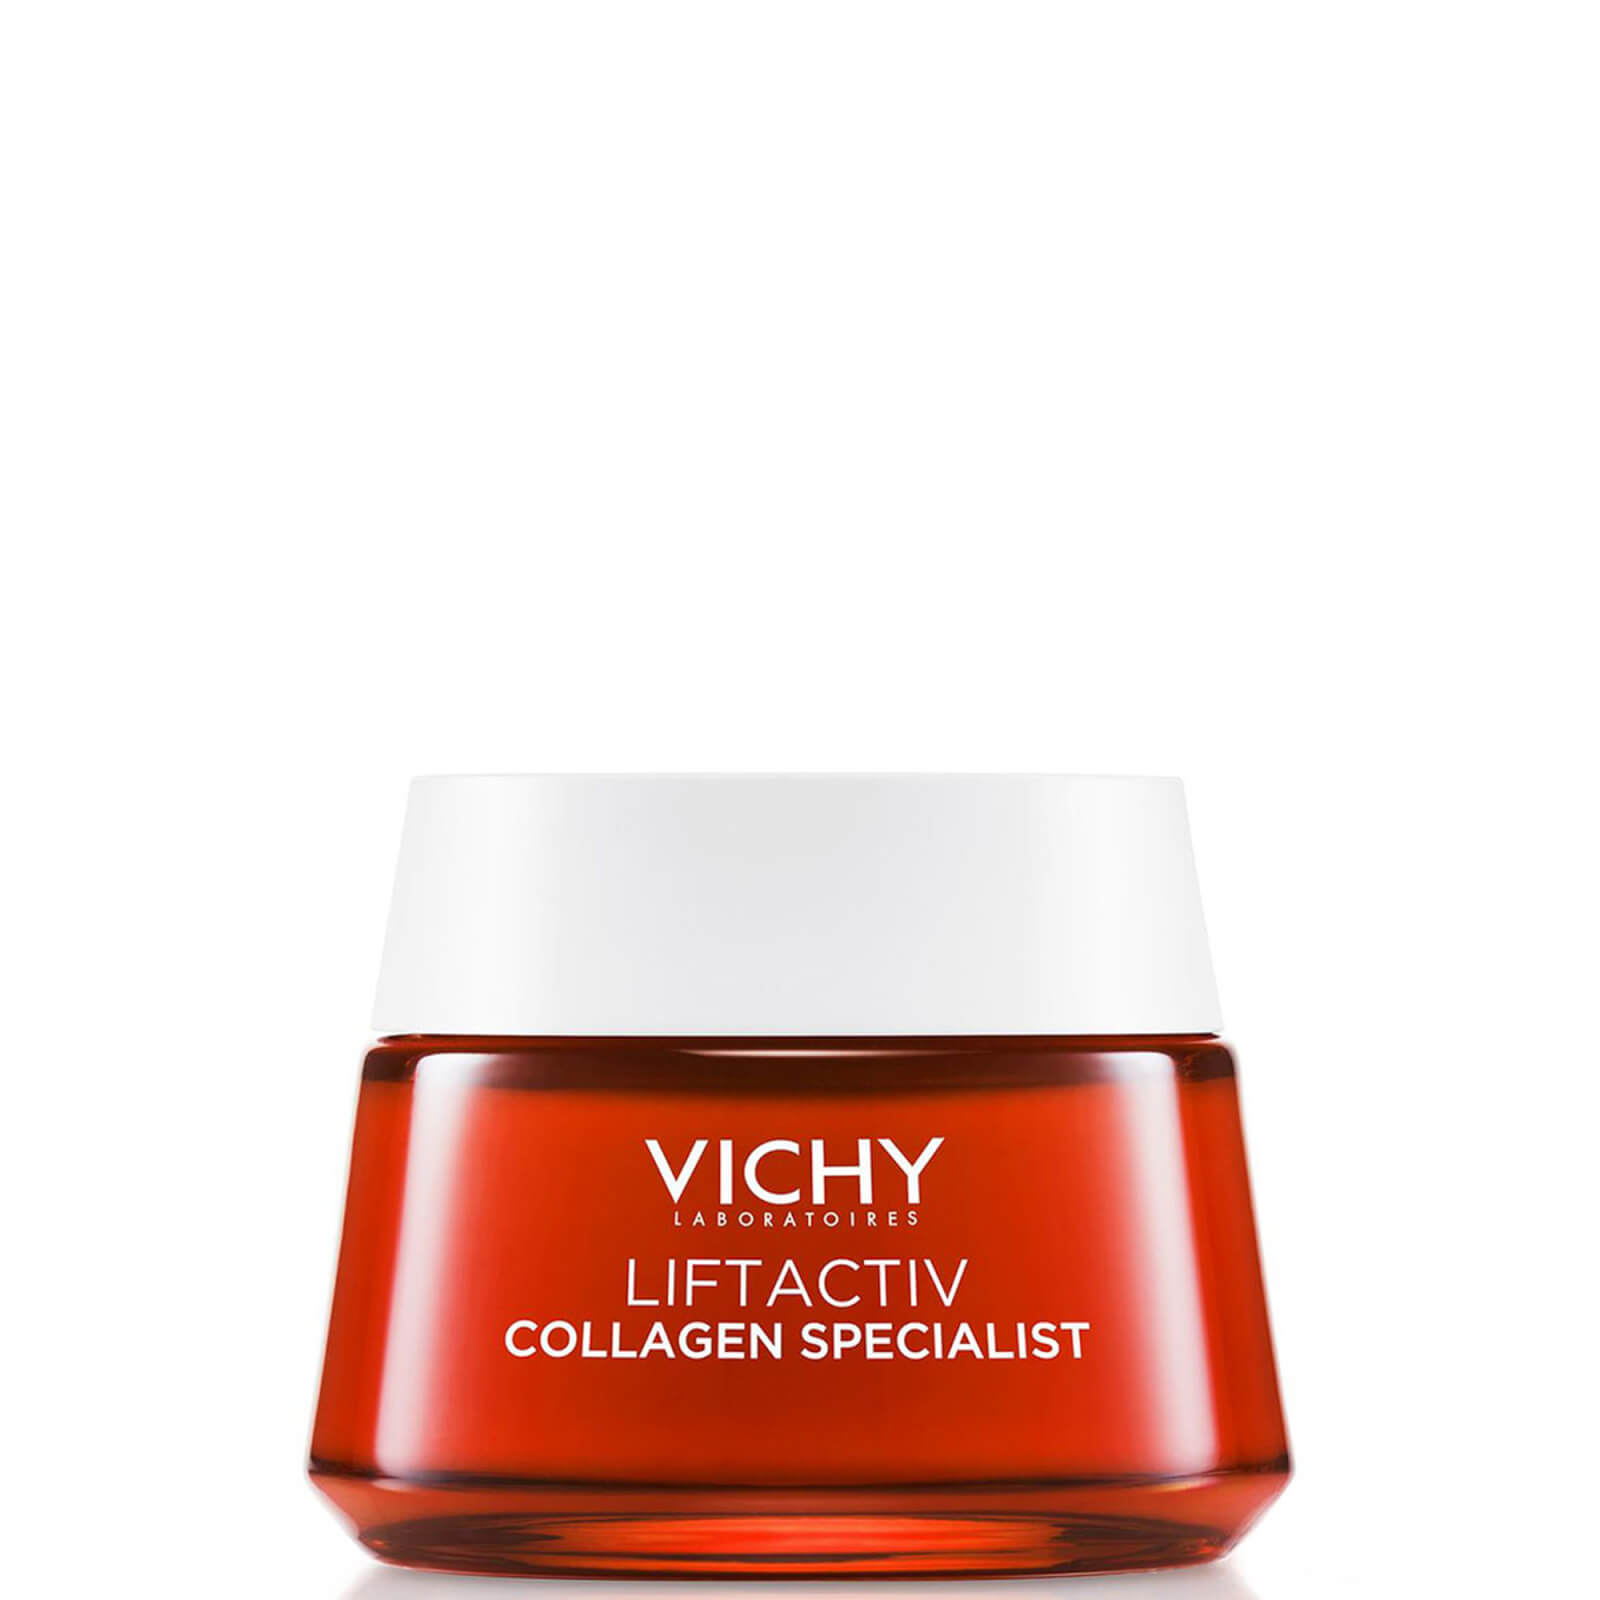 VICHY Liftactiv Collagen Specialist Peptide & Vitamin C Firming Moisturiser 50ml